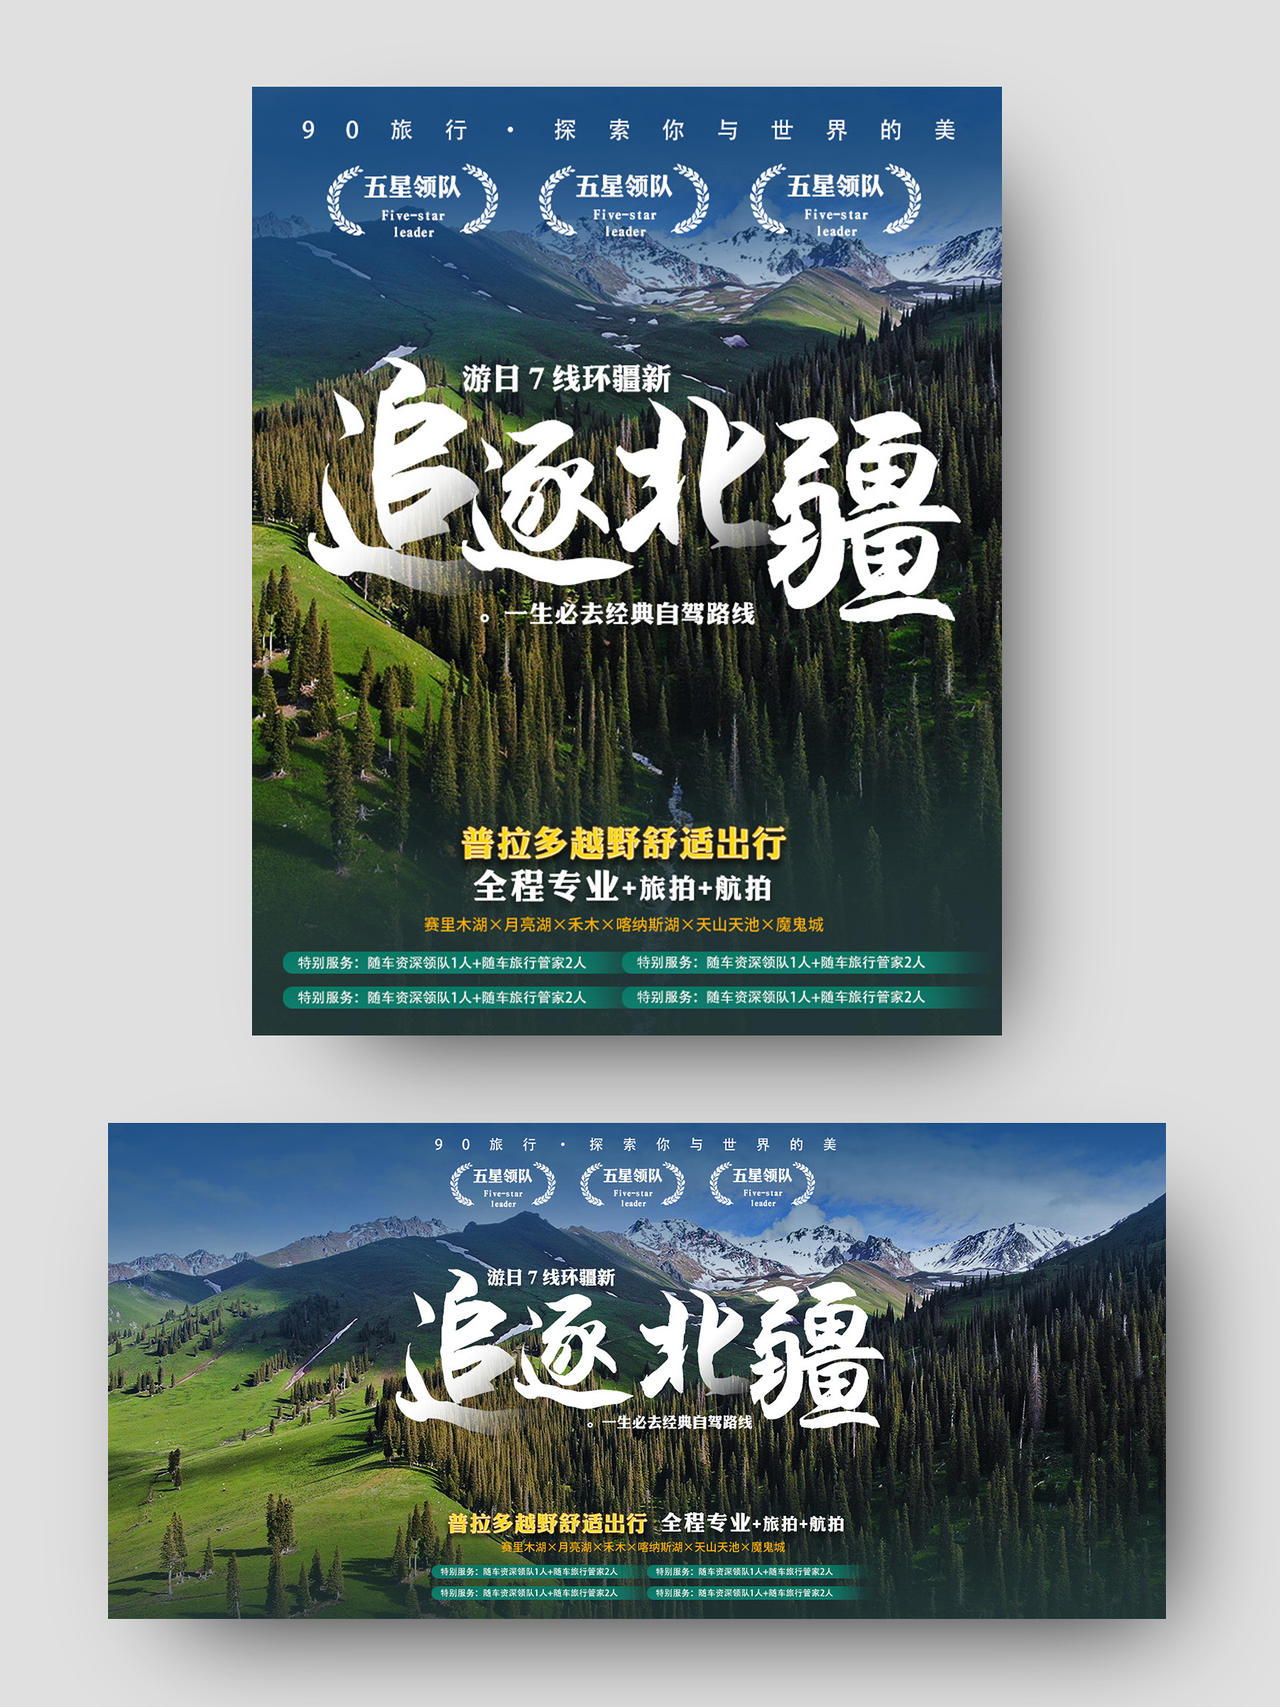 自然风光追逐北疆旅游主题淘宝海报